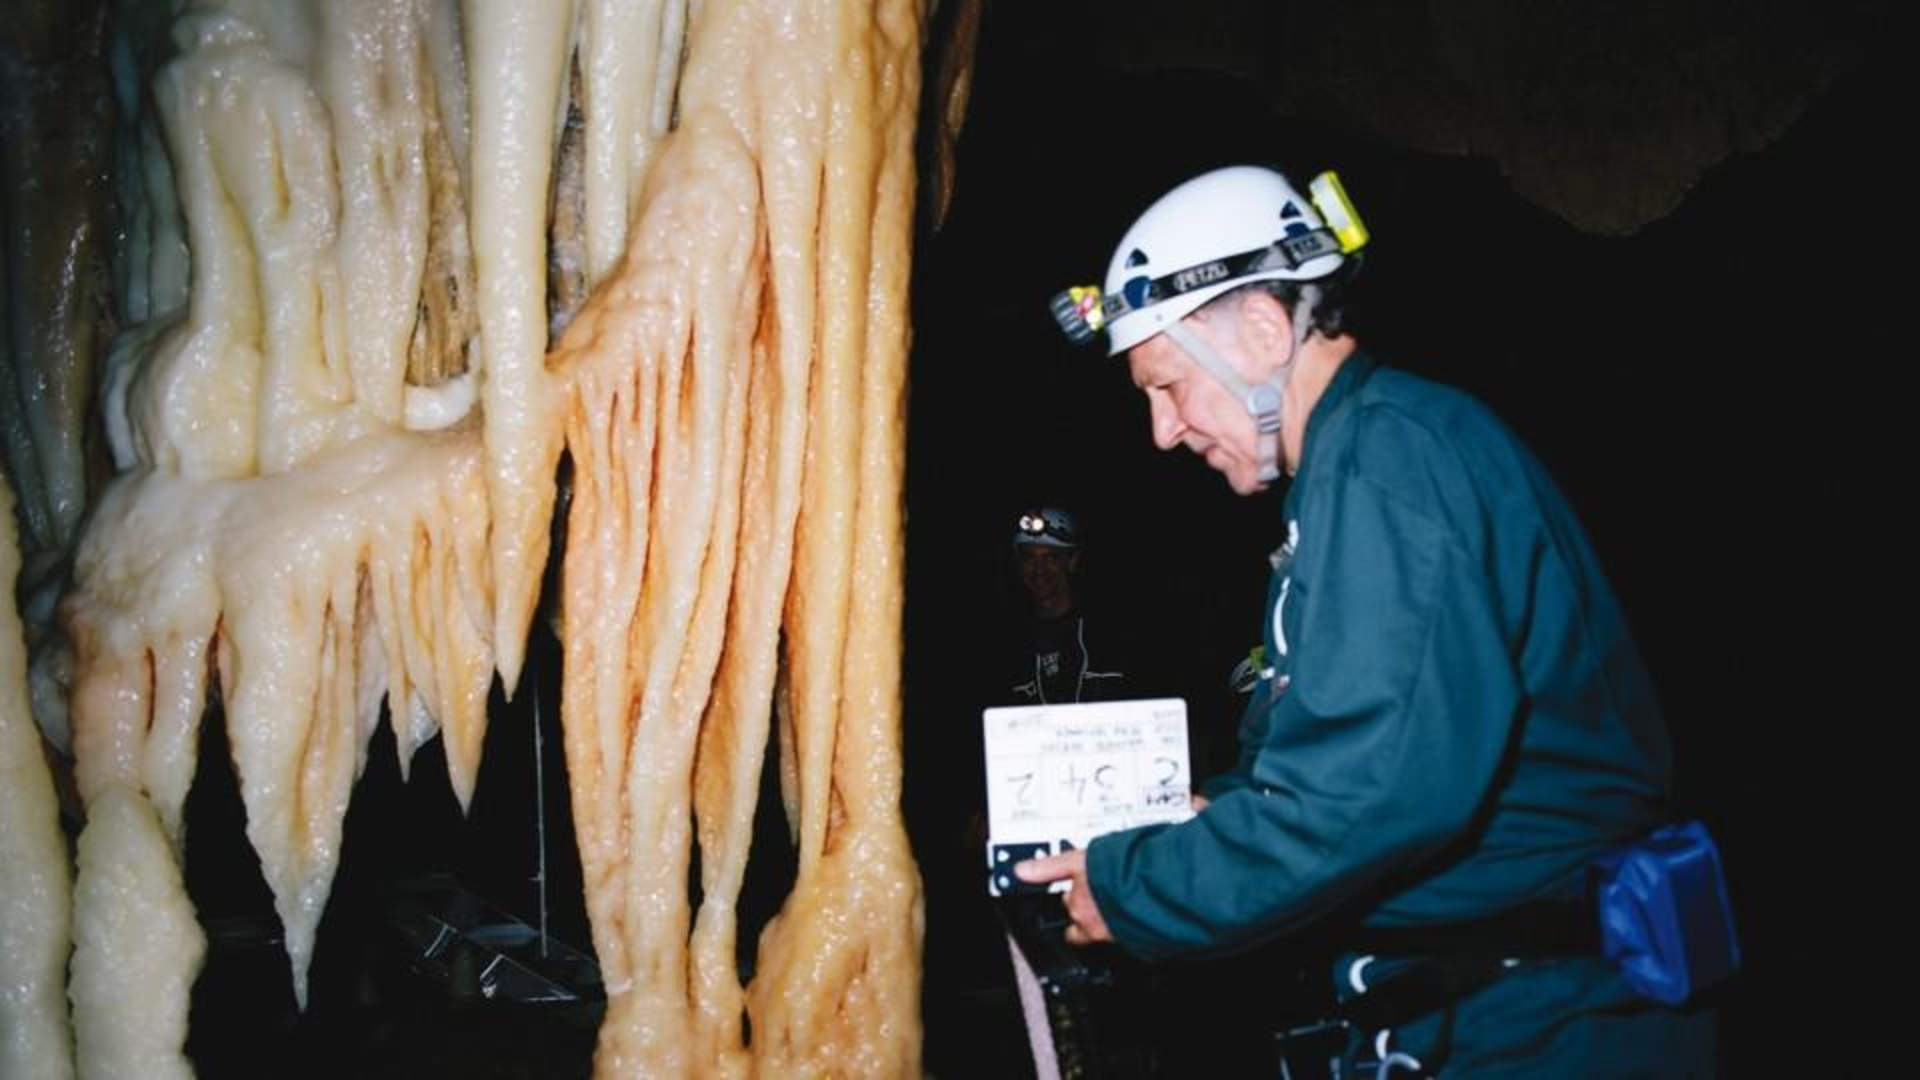 Werner Herzog grabando “La cueva de los sueños olvidados” en la cueva de Chauvet, Francia. Fuente.